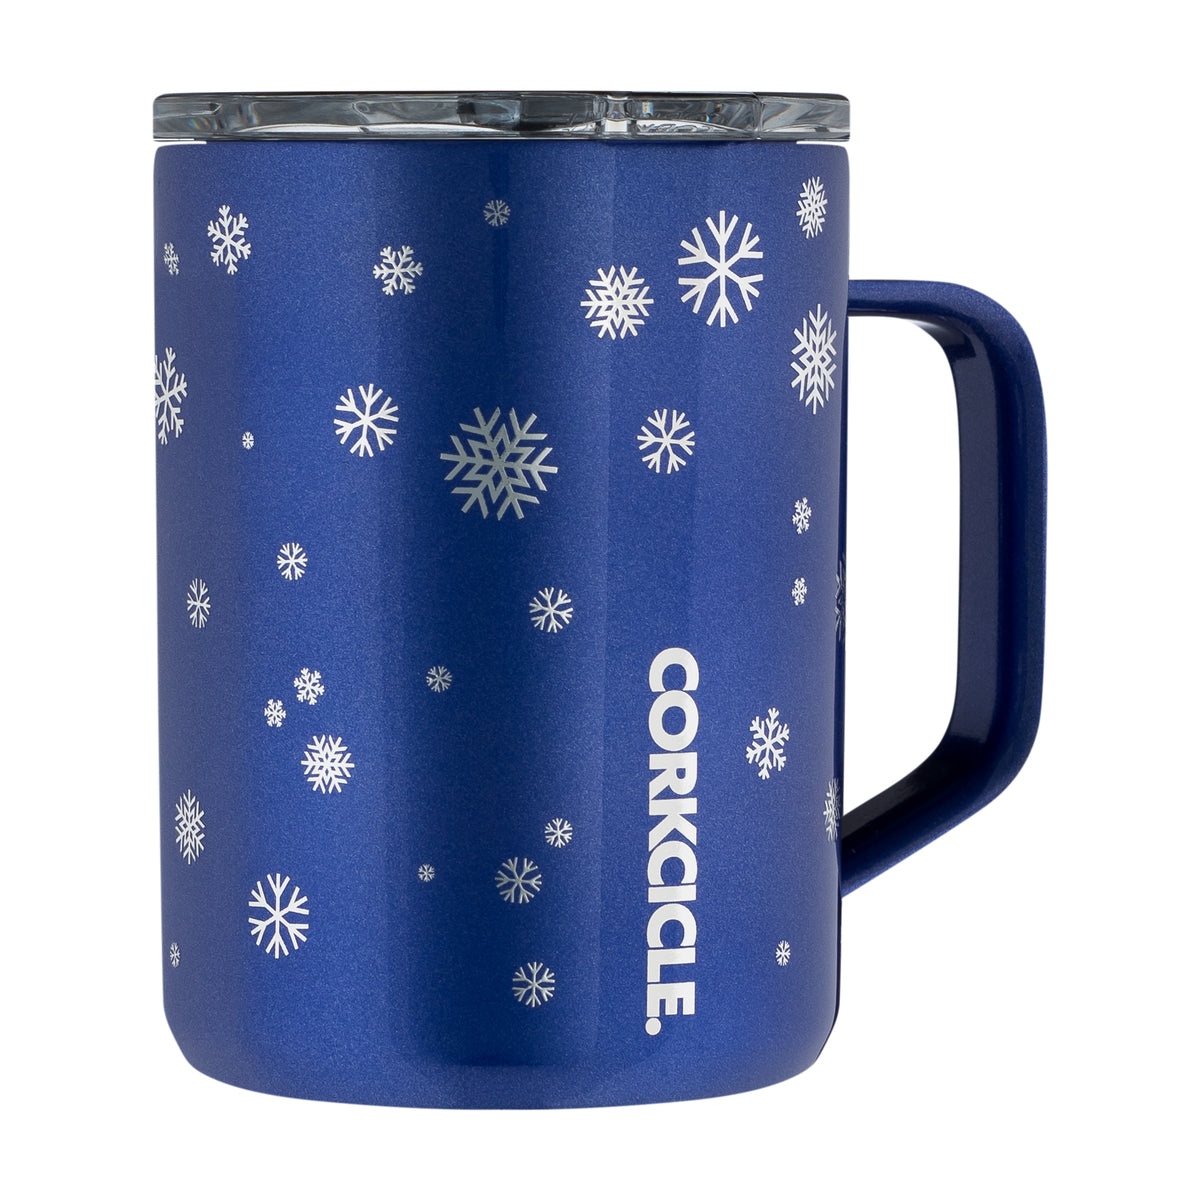 CORKCICLE - Mug Snowfall Blue 16 oz